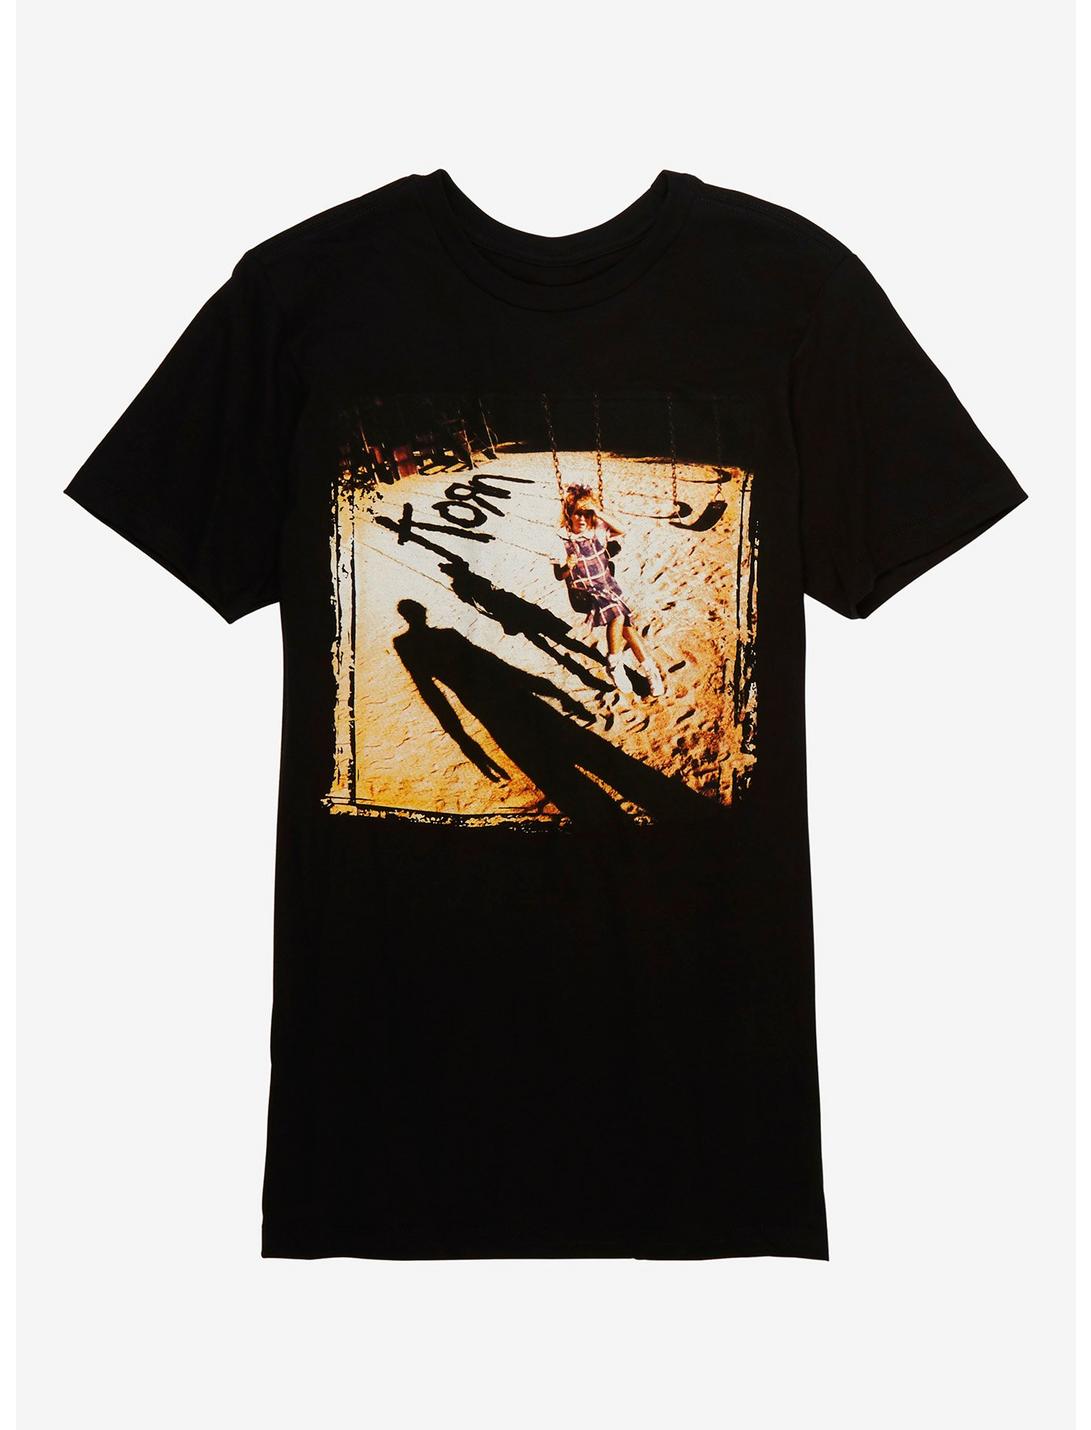 Korn Album Cover T-Shirt, BLACK, hi-res